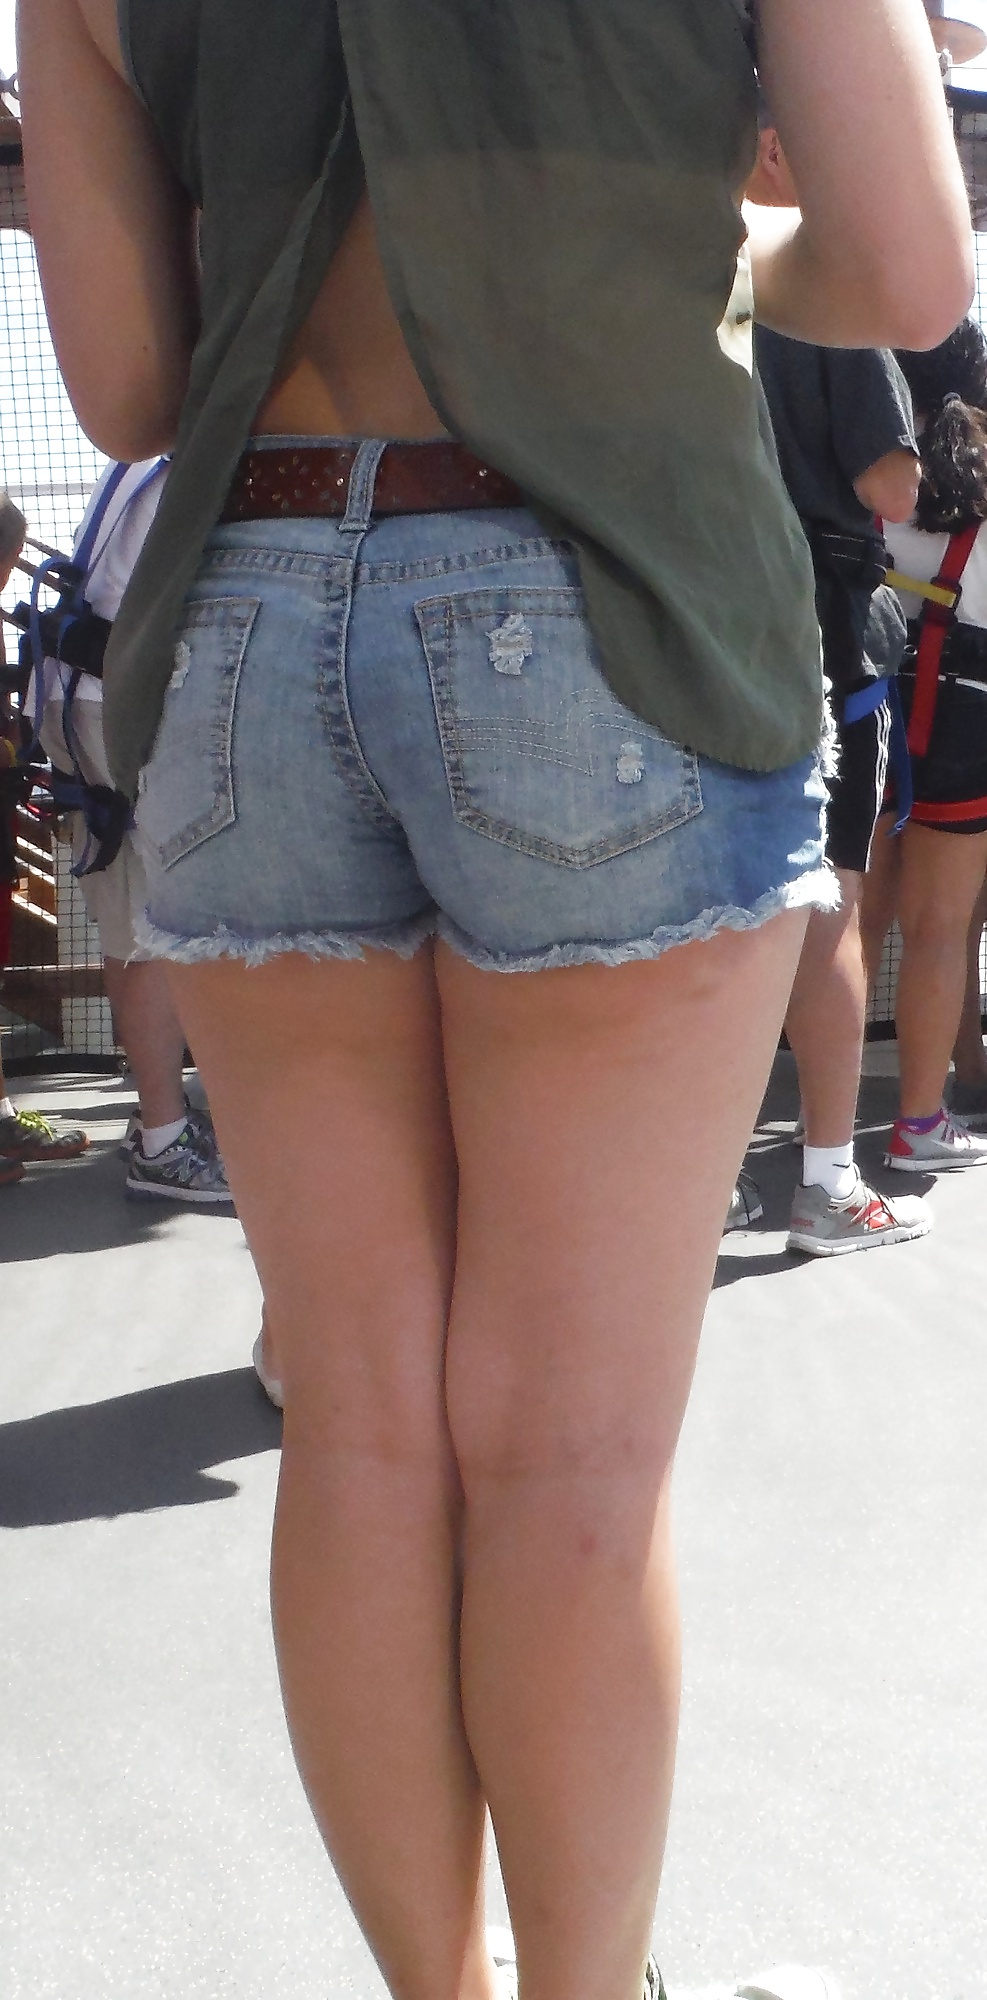 Popular teen girls ass & butt in jeans part 4  #26738503